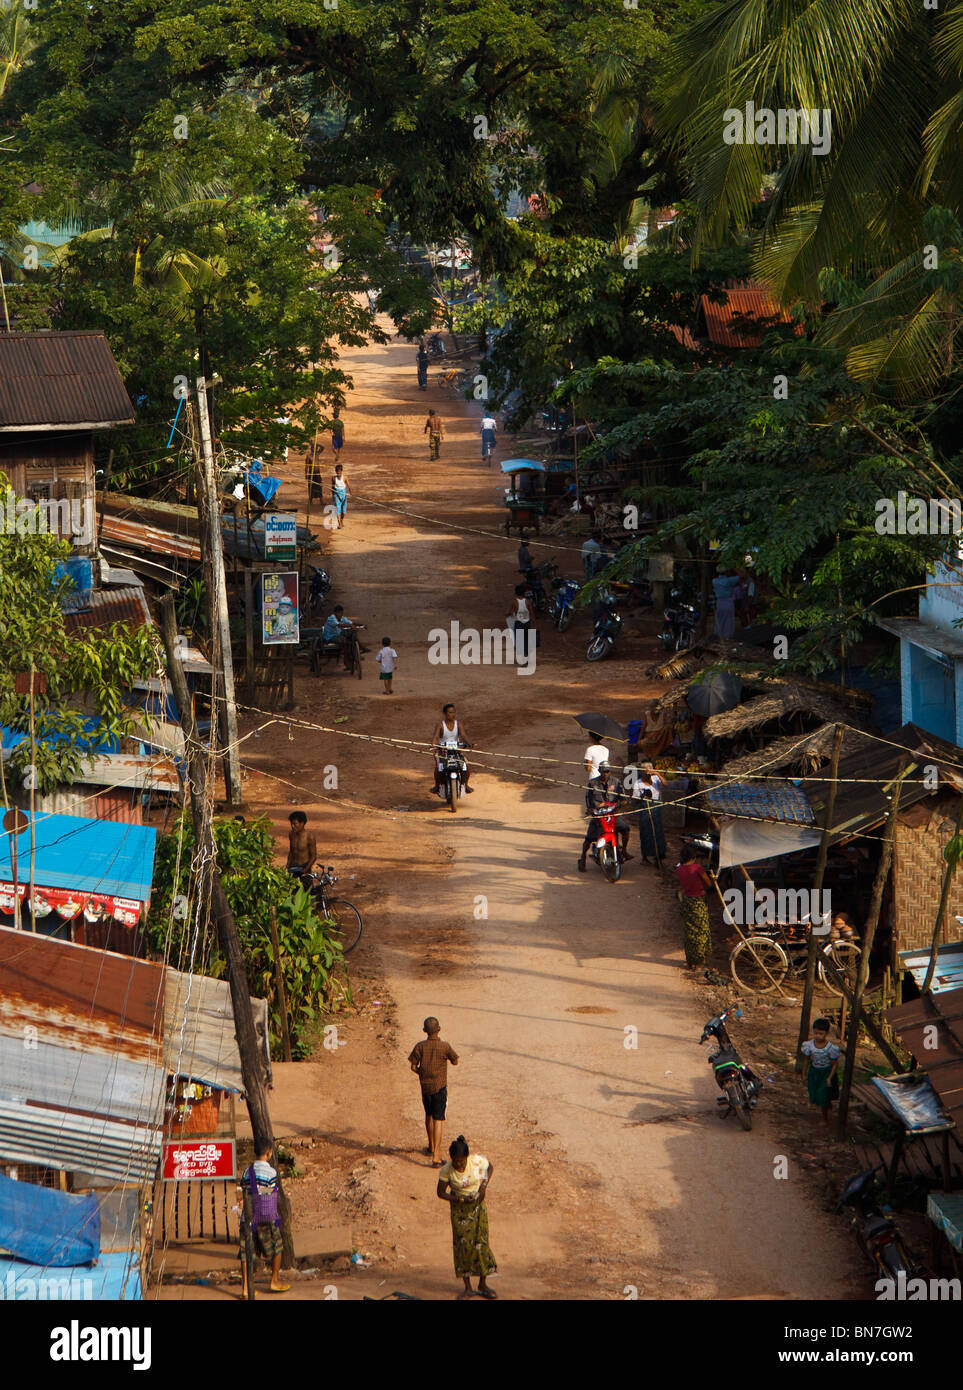 grünen tropischen Straßen mit Kolonialarchitektur in Mawlamyaing oder Mawlamyine, Mon-Staat, südlichen Burma Stockfoto